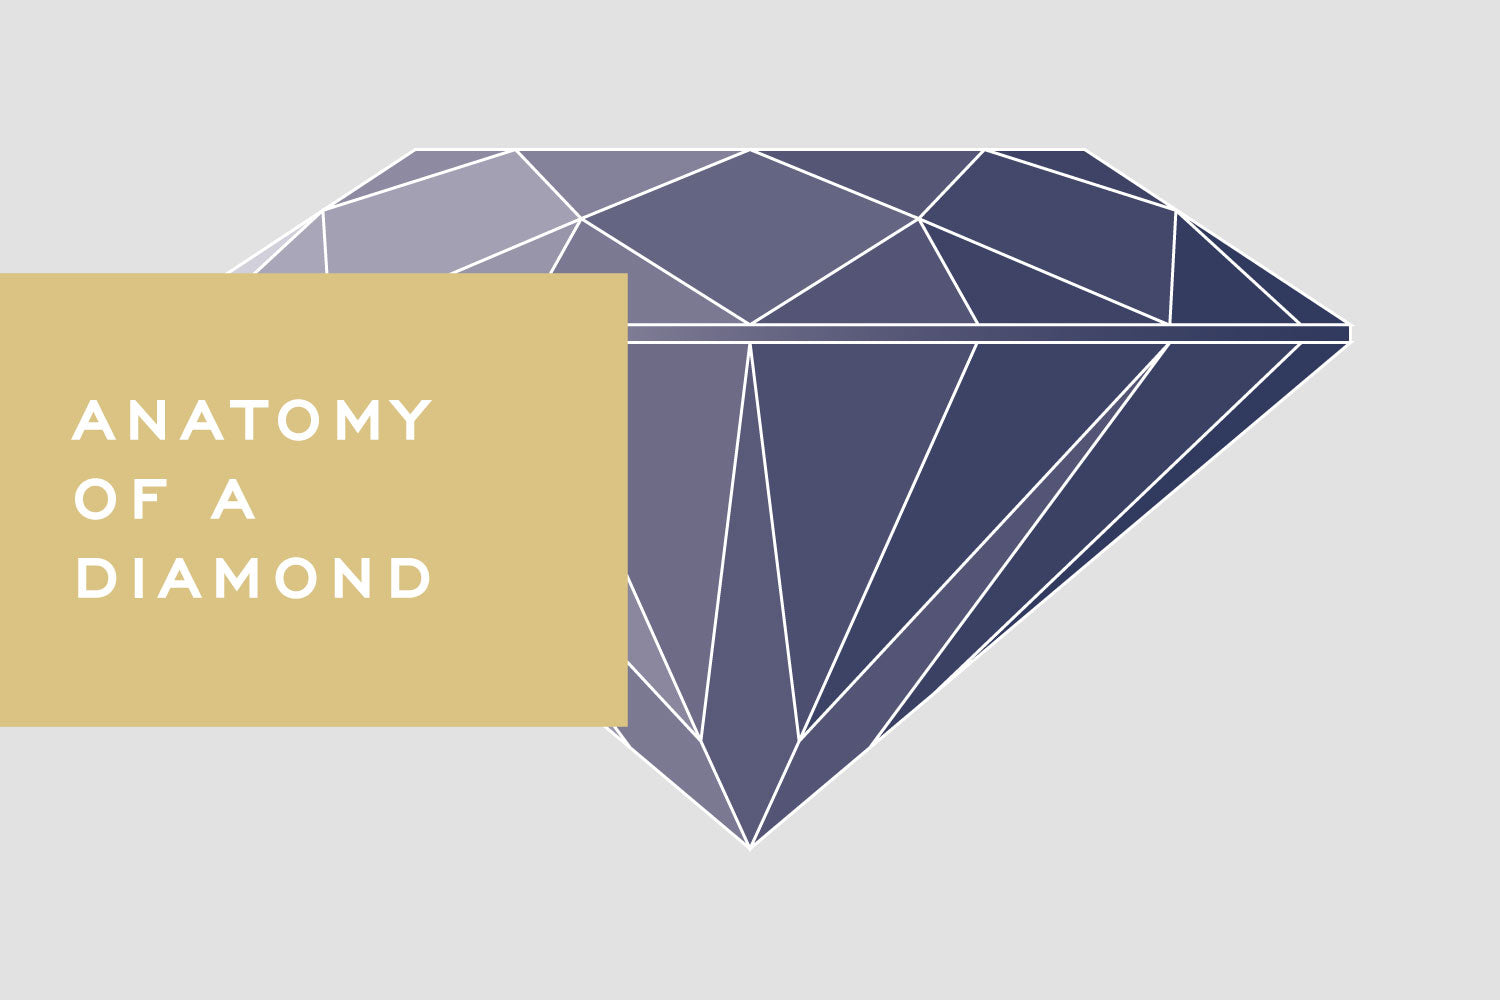 Anatomy of a Diamond by Corey Egan